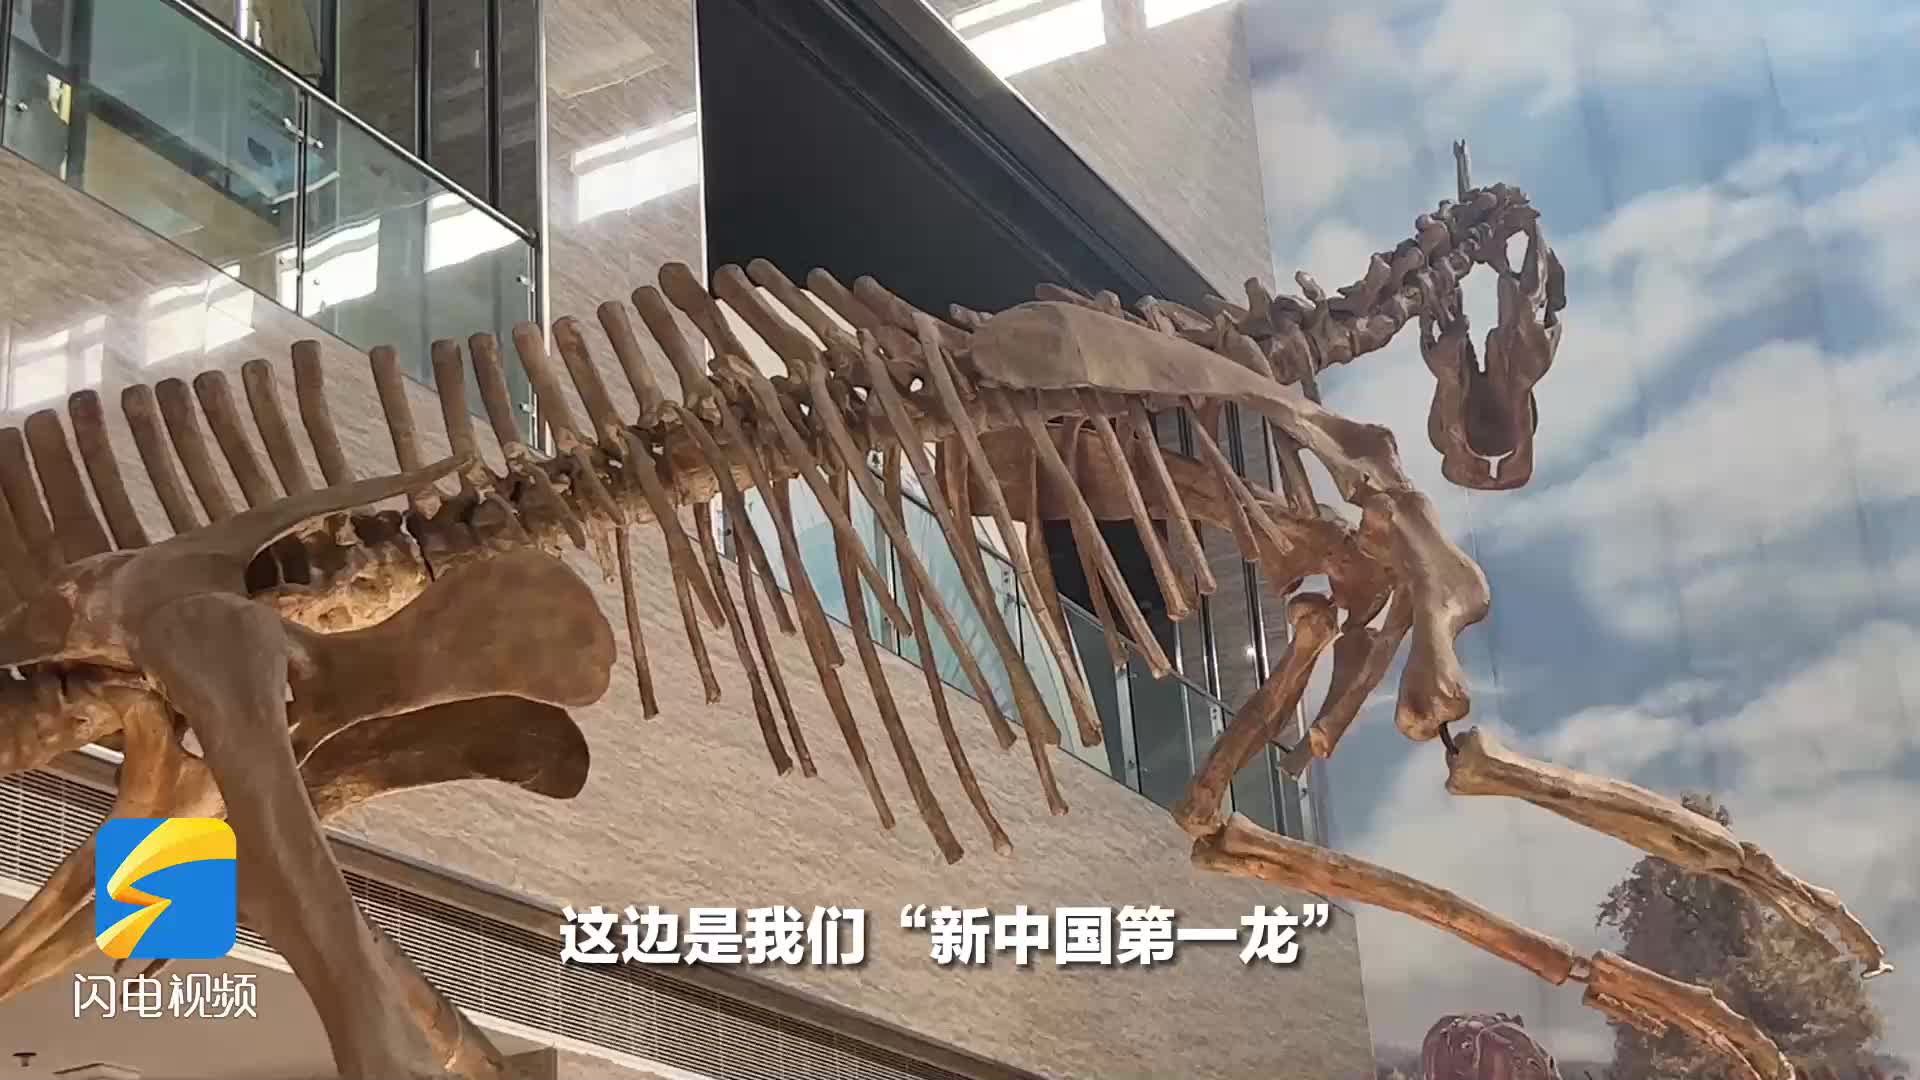 走黄渤海文化体验廊道主题采访｜已发现300多种古生物化石 来“恐龙之乡”打卡“新中国第一龙”出土地